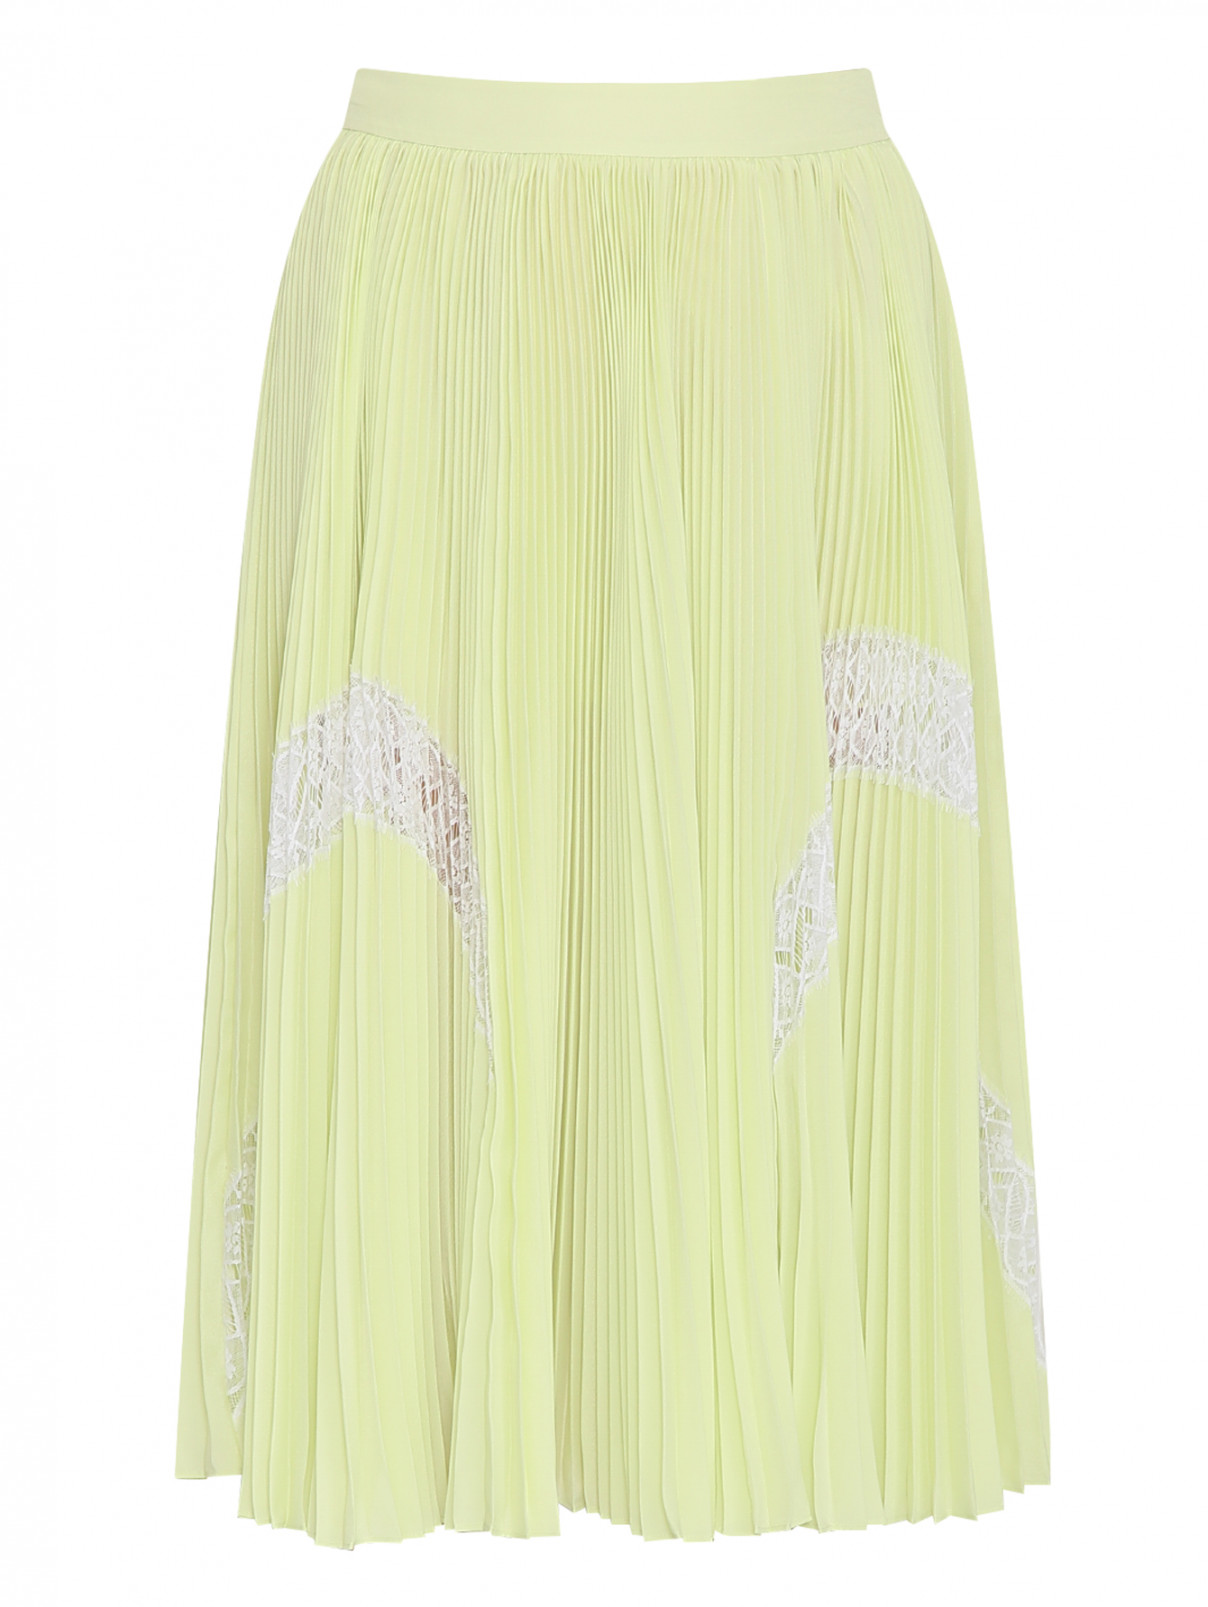 Плиссированная юбка-миди с кружевной отделкой Barbara Bui  –  Общий вид  – Цвет:  Зеленый